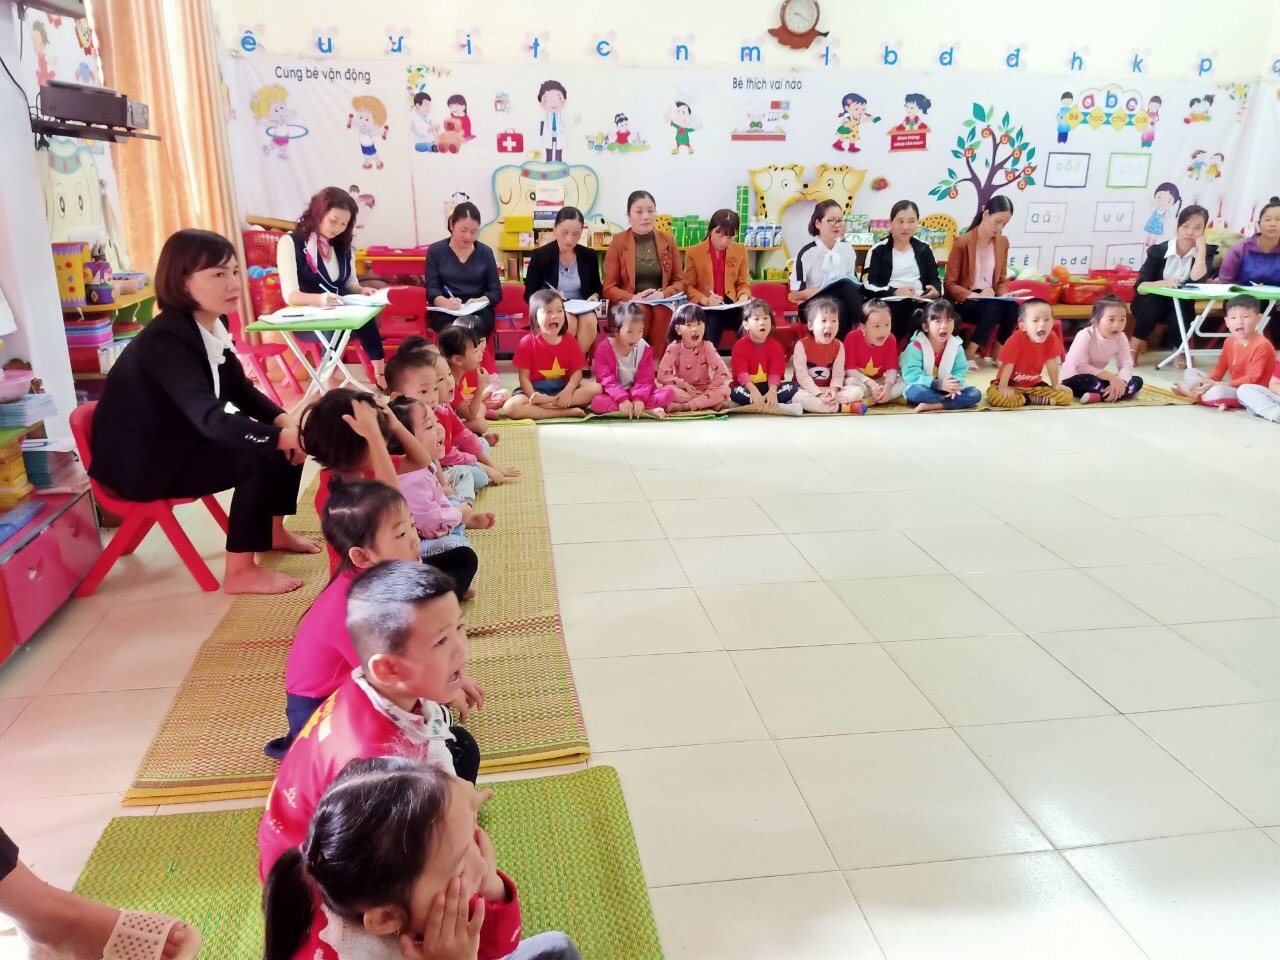 TRƯỜNG MẦM NON THANH TRƯỜNG Tổ chức chuyên đề “Phát triển một số kỹ năng ban đầu về đọc, viết cho trẻ mẫu giáo theo chương trình GDMN với sự hỗ trợ của bộ công cụ ELM” năm học 2020-2021